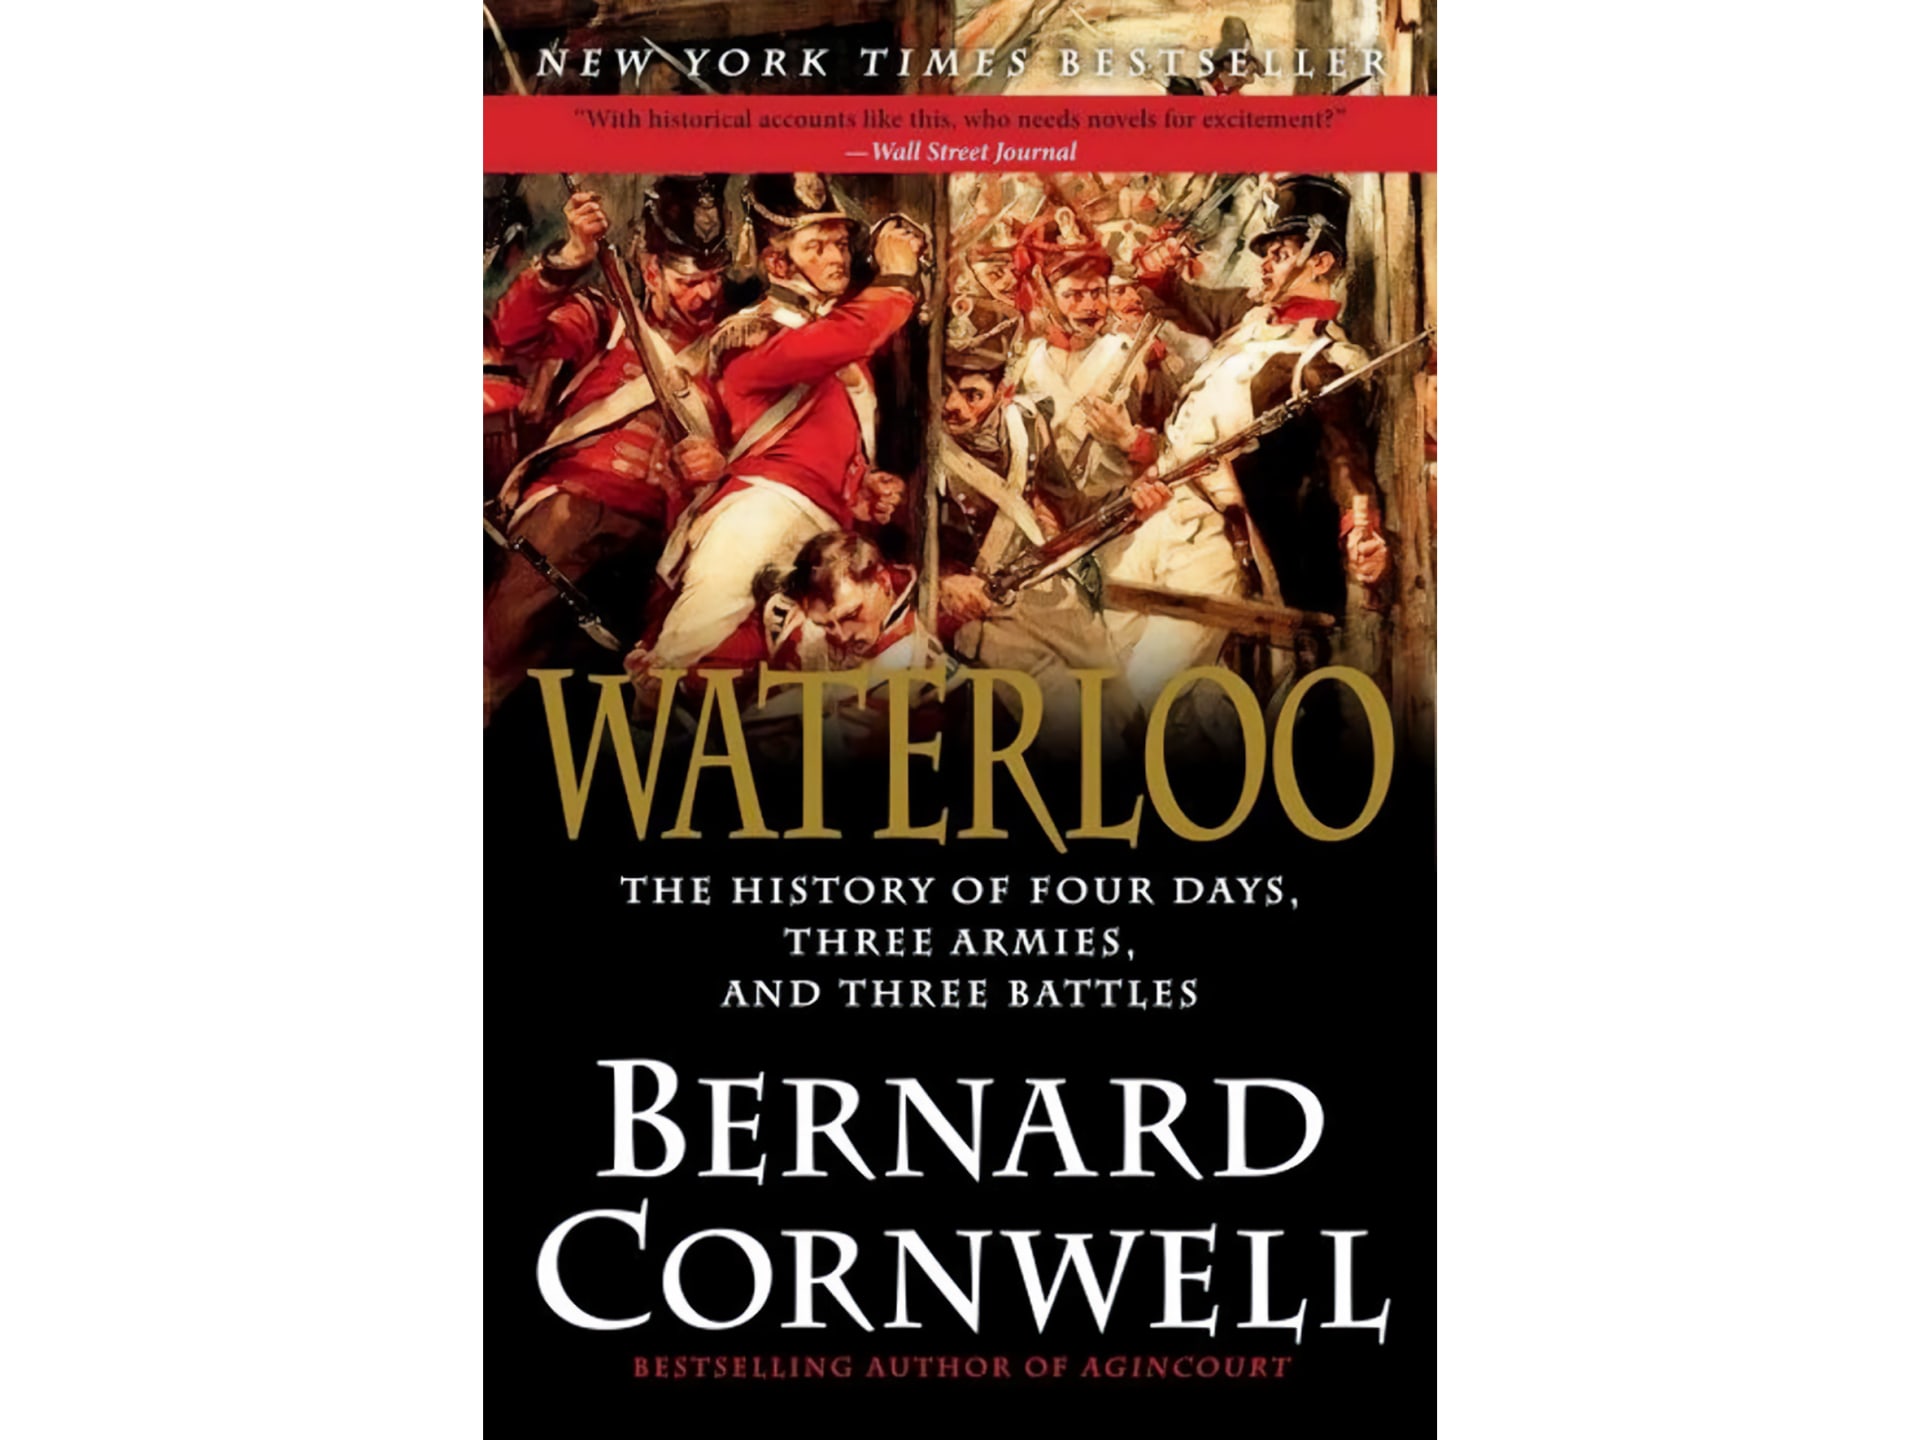 Kniha Bernarda Cornwella chce ukázat, jaké to vlastně na bojišti bylo.